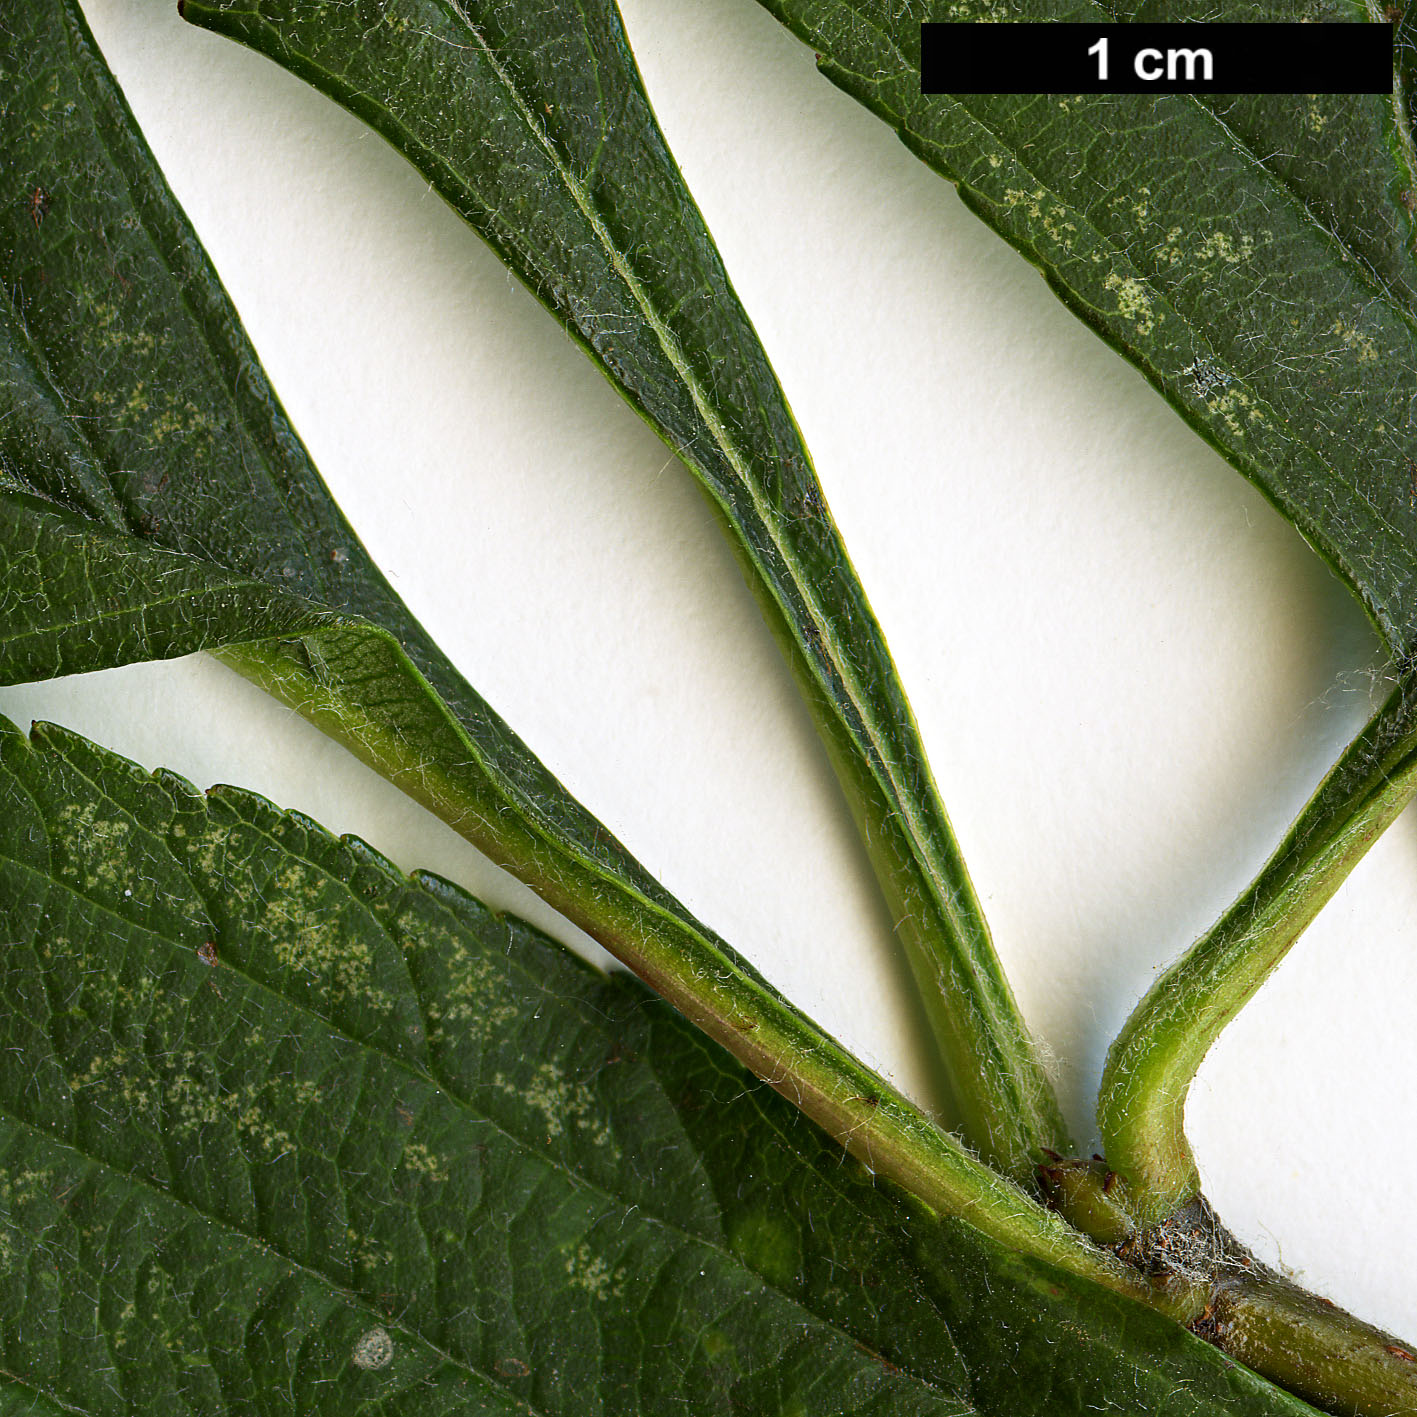 High resolution image: Family: Rosaceae - Genus: Crataegus - Taxon: punctata - SpeciesSub: var.  aurea